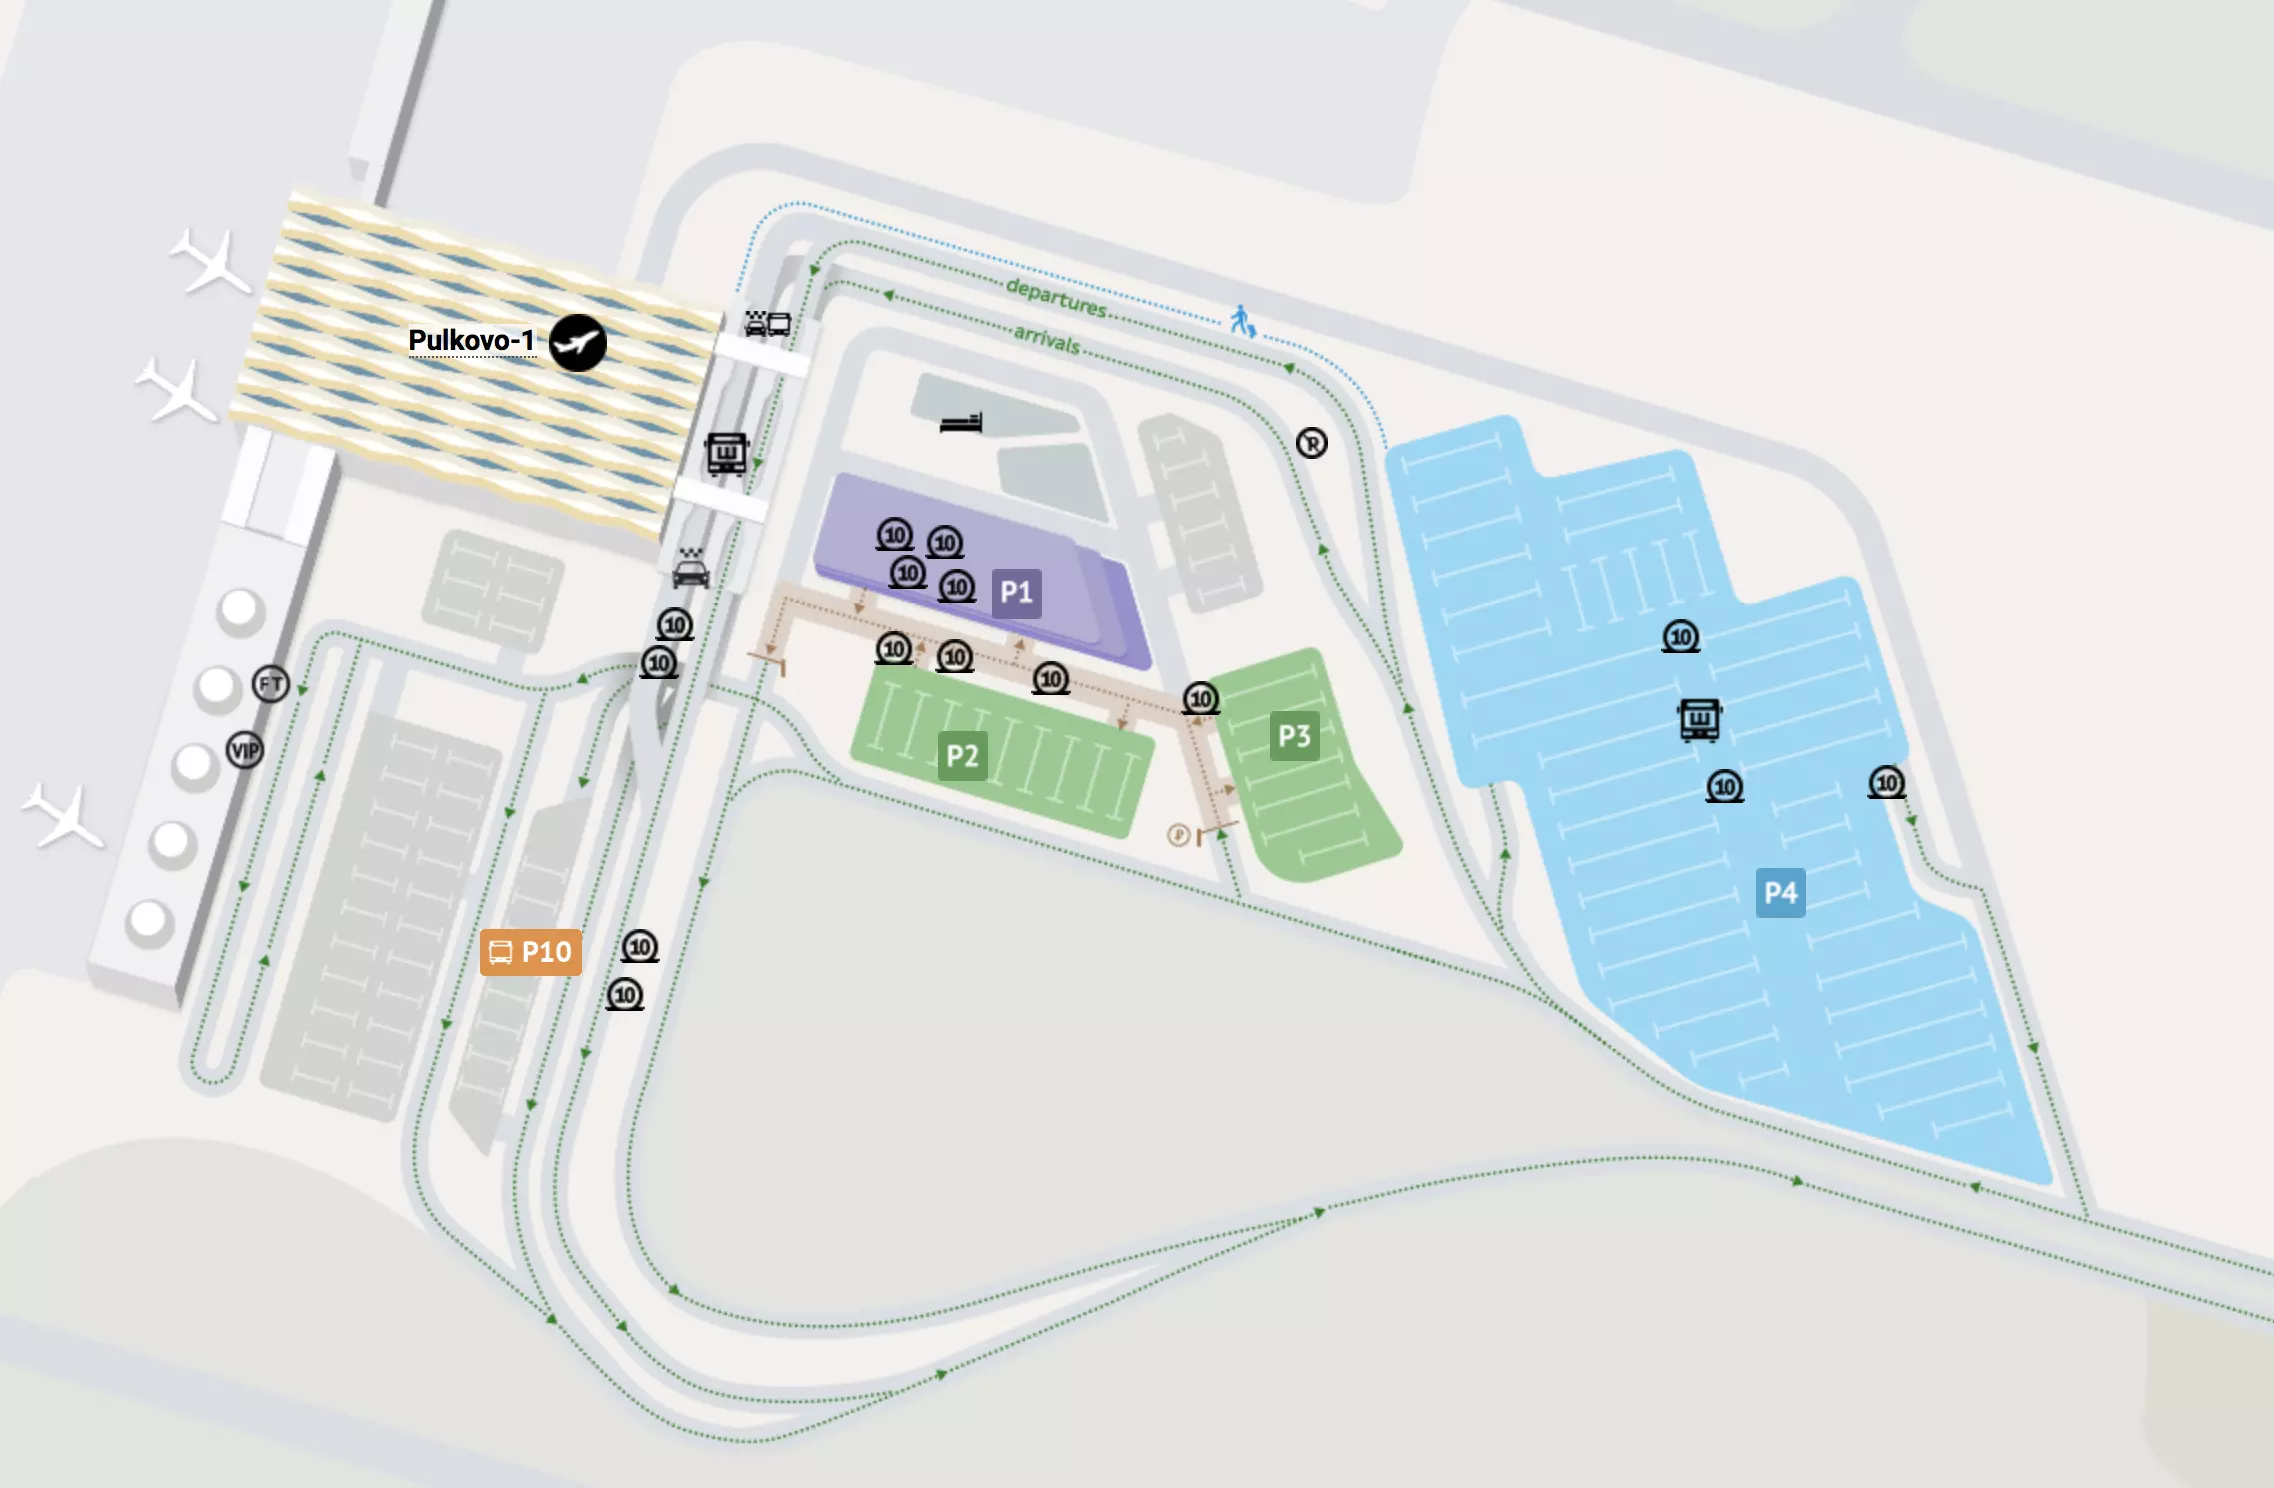 Аэропорт пулково: где находится на карте санкт-петербурга, расположение терминалов